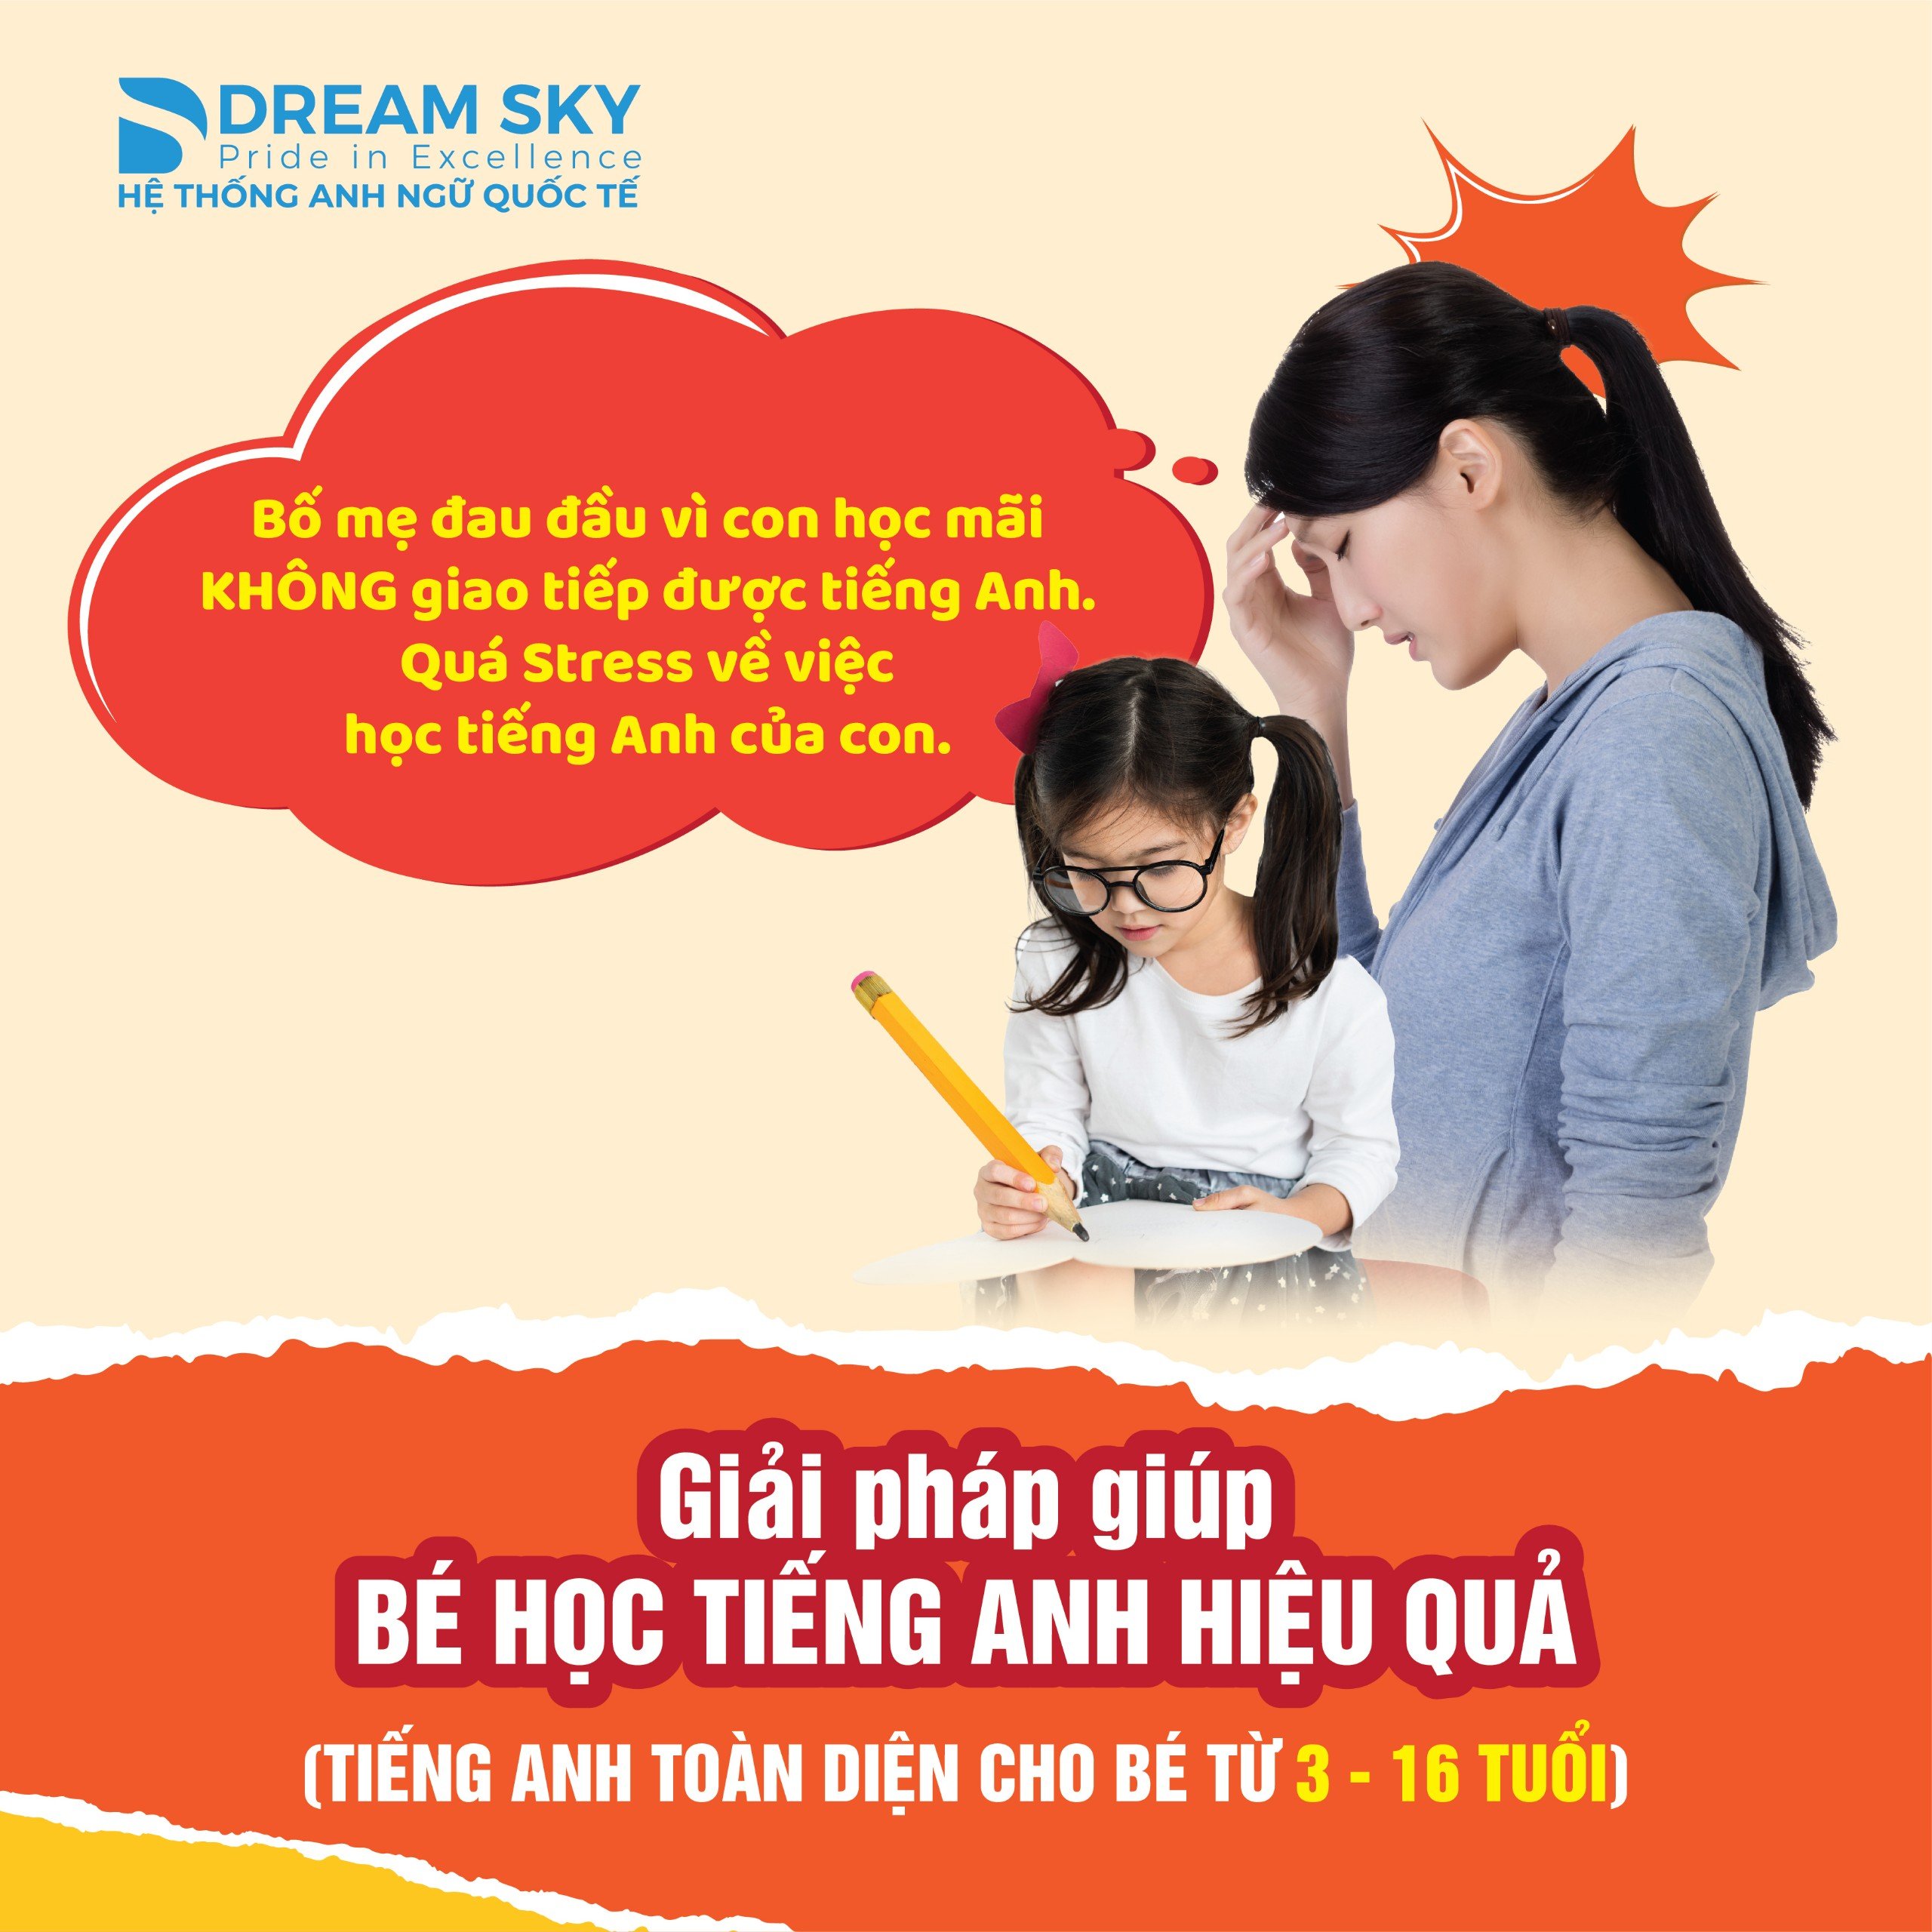 DREAM SKY - LỰA CHỌN CHO TƯƠNG LAI